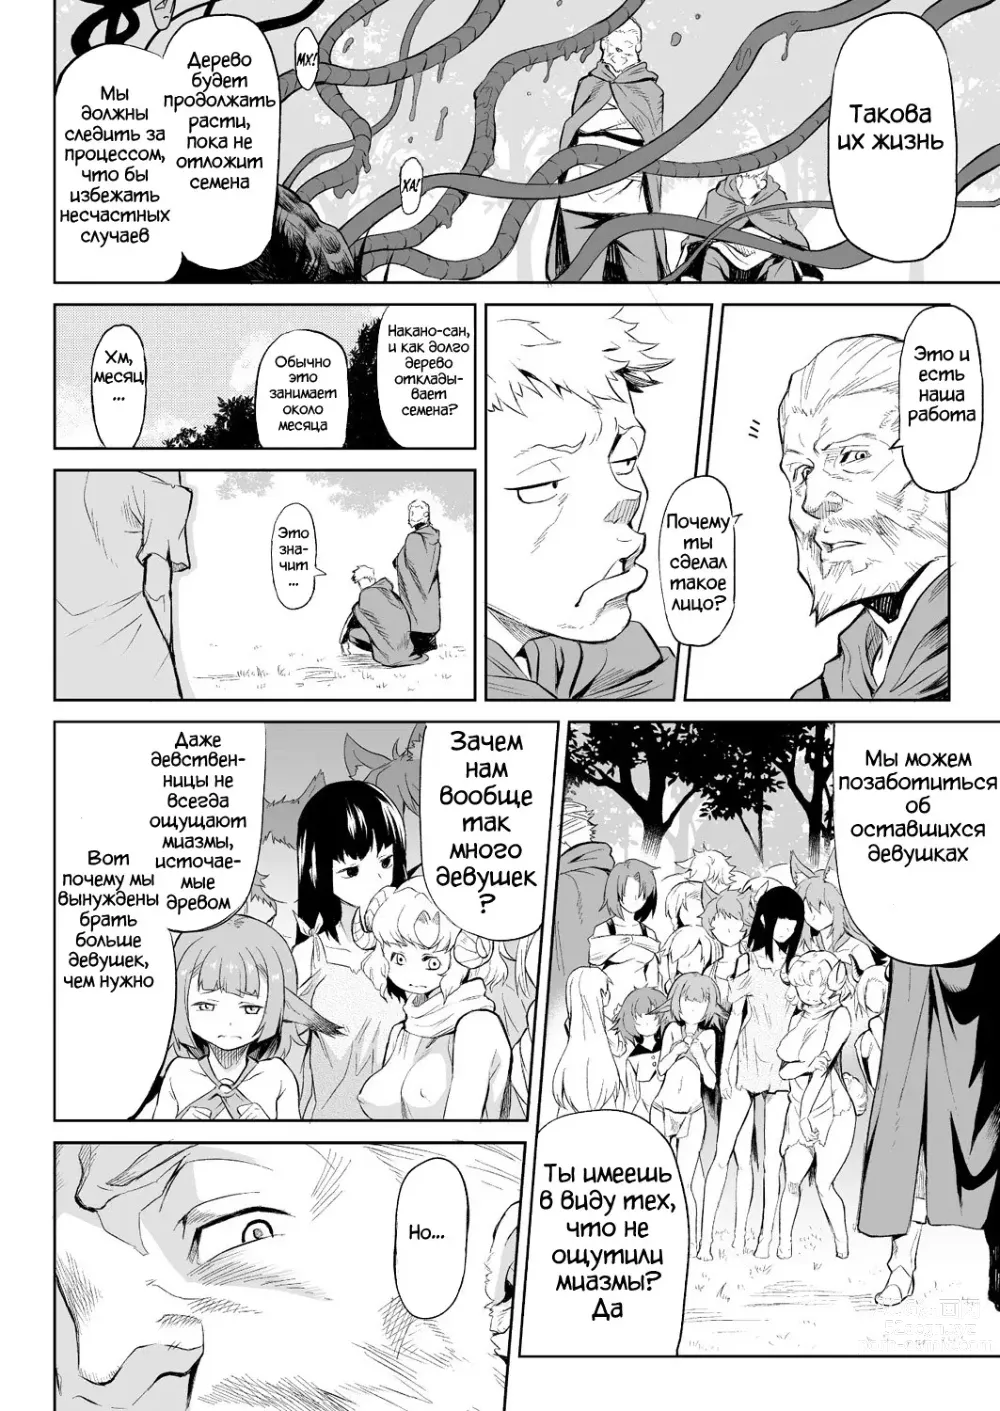 Page 13 of manga Parasite Tree